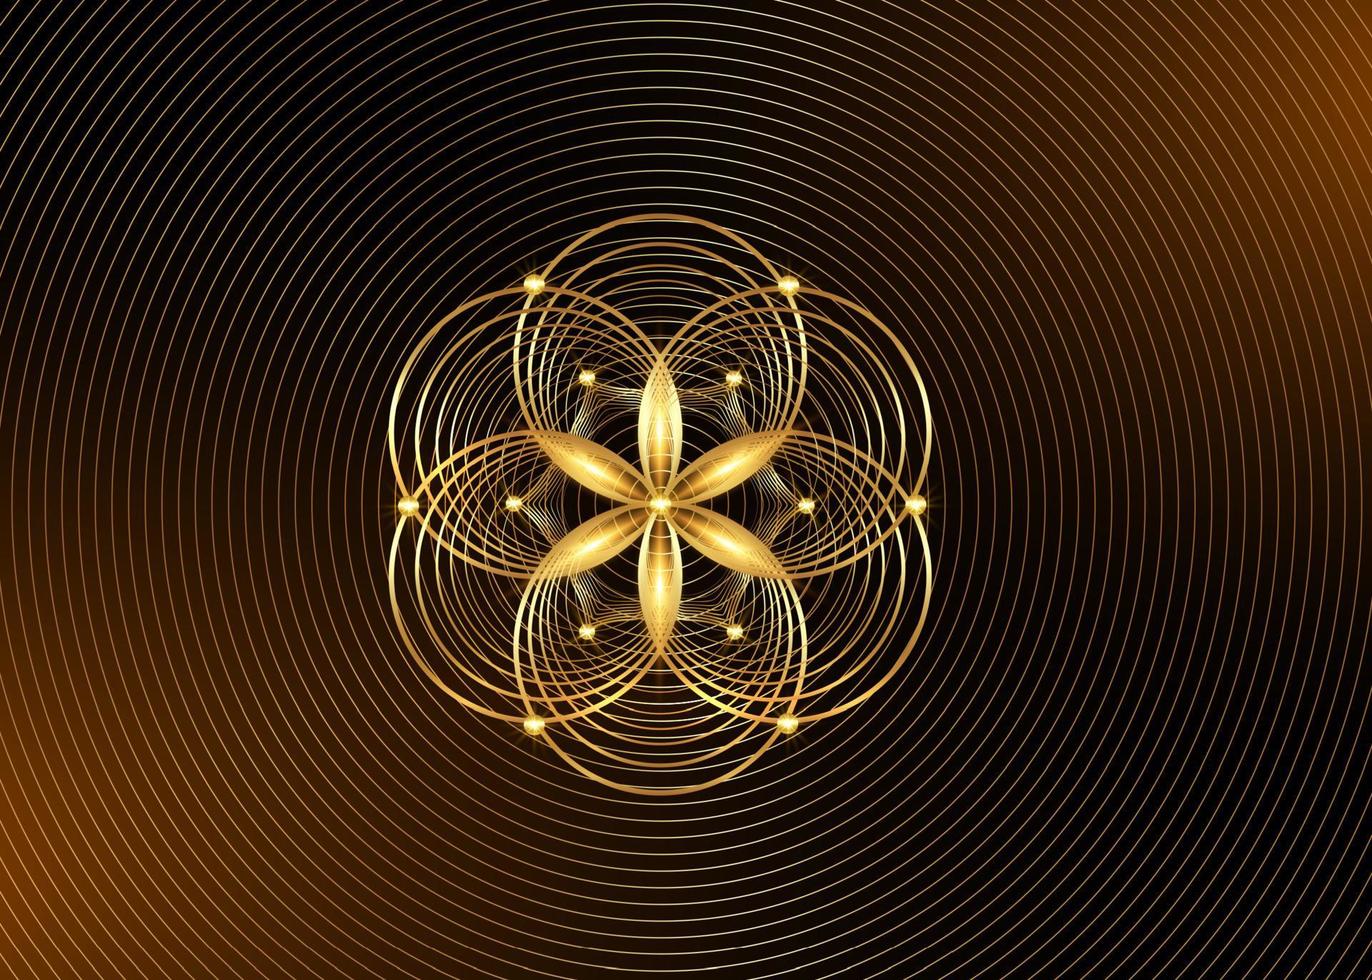 semente da geometria sagrada do símbolo da vida. ícone do logotipo de ouro mandala mística geométrica da alquimia, flor esotérica da vida. círculos de ouro entrelaçados, amuleto meditativo de lótus de vetor isolado em fundo dourado